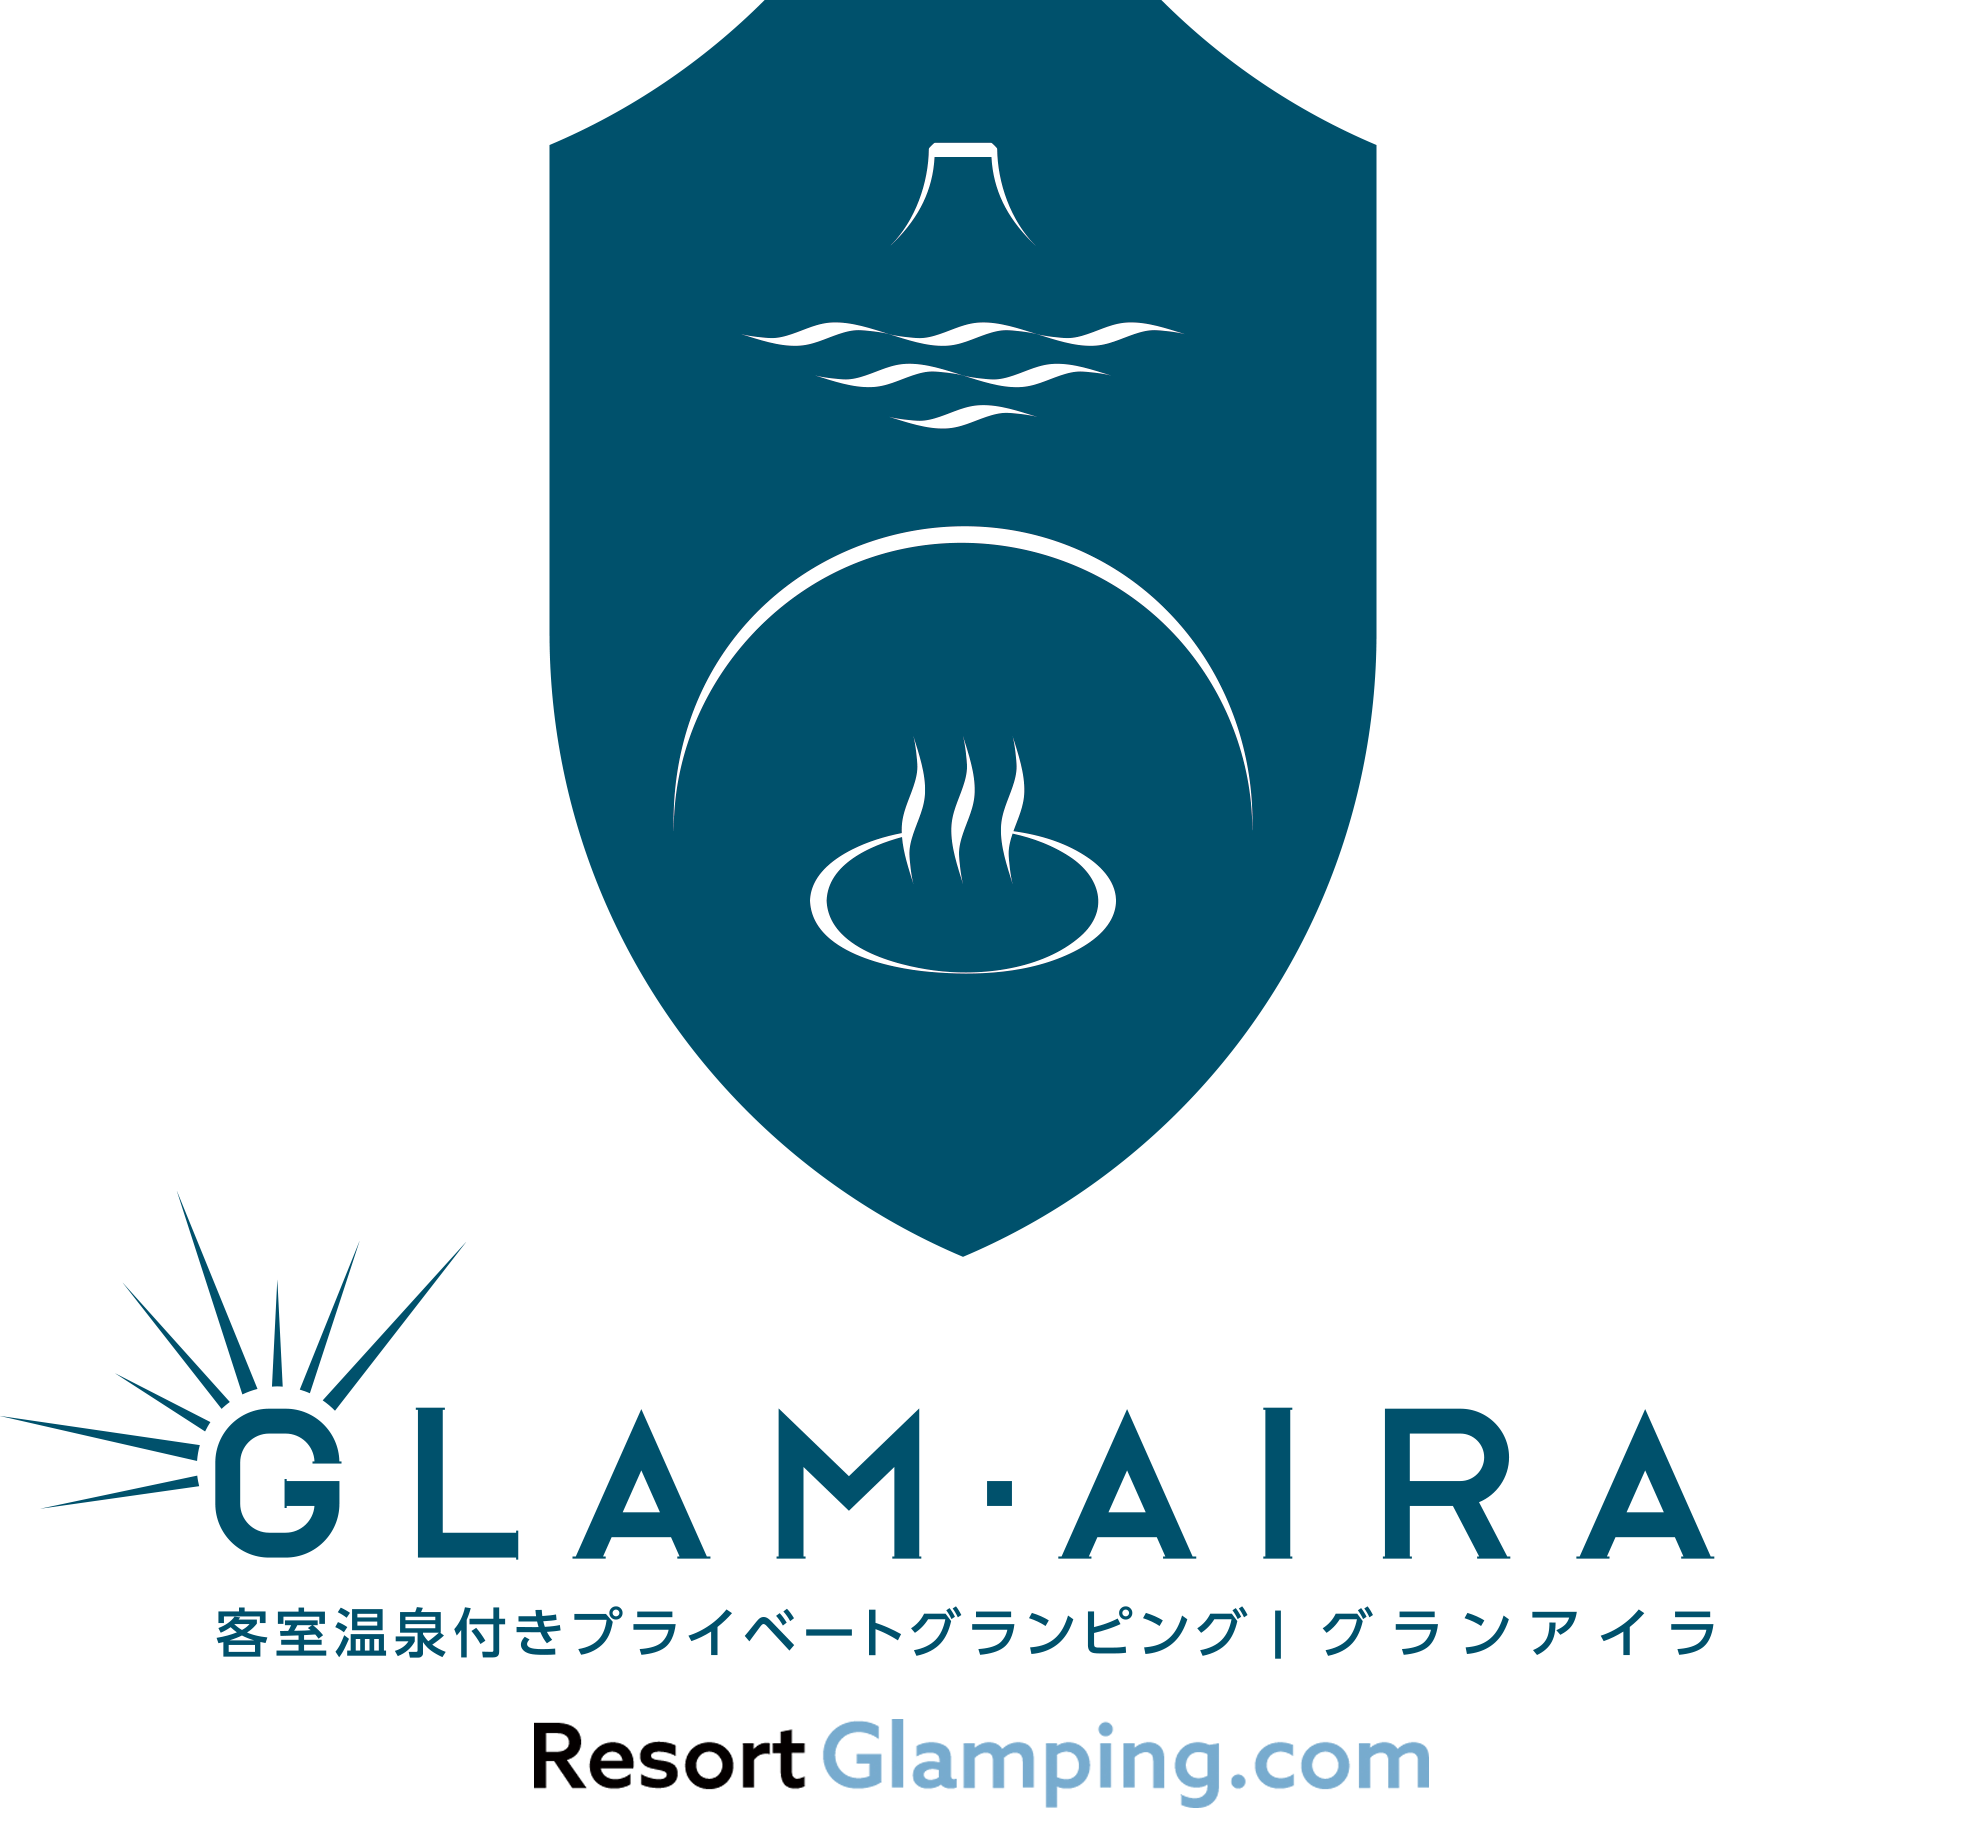 Glam Aira Izu-kogen